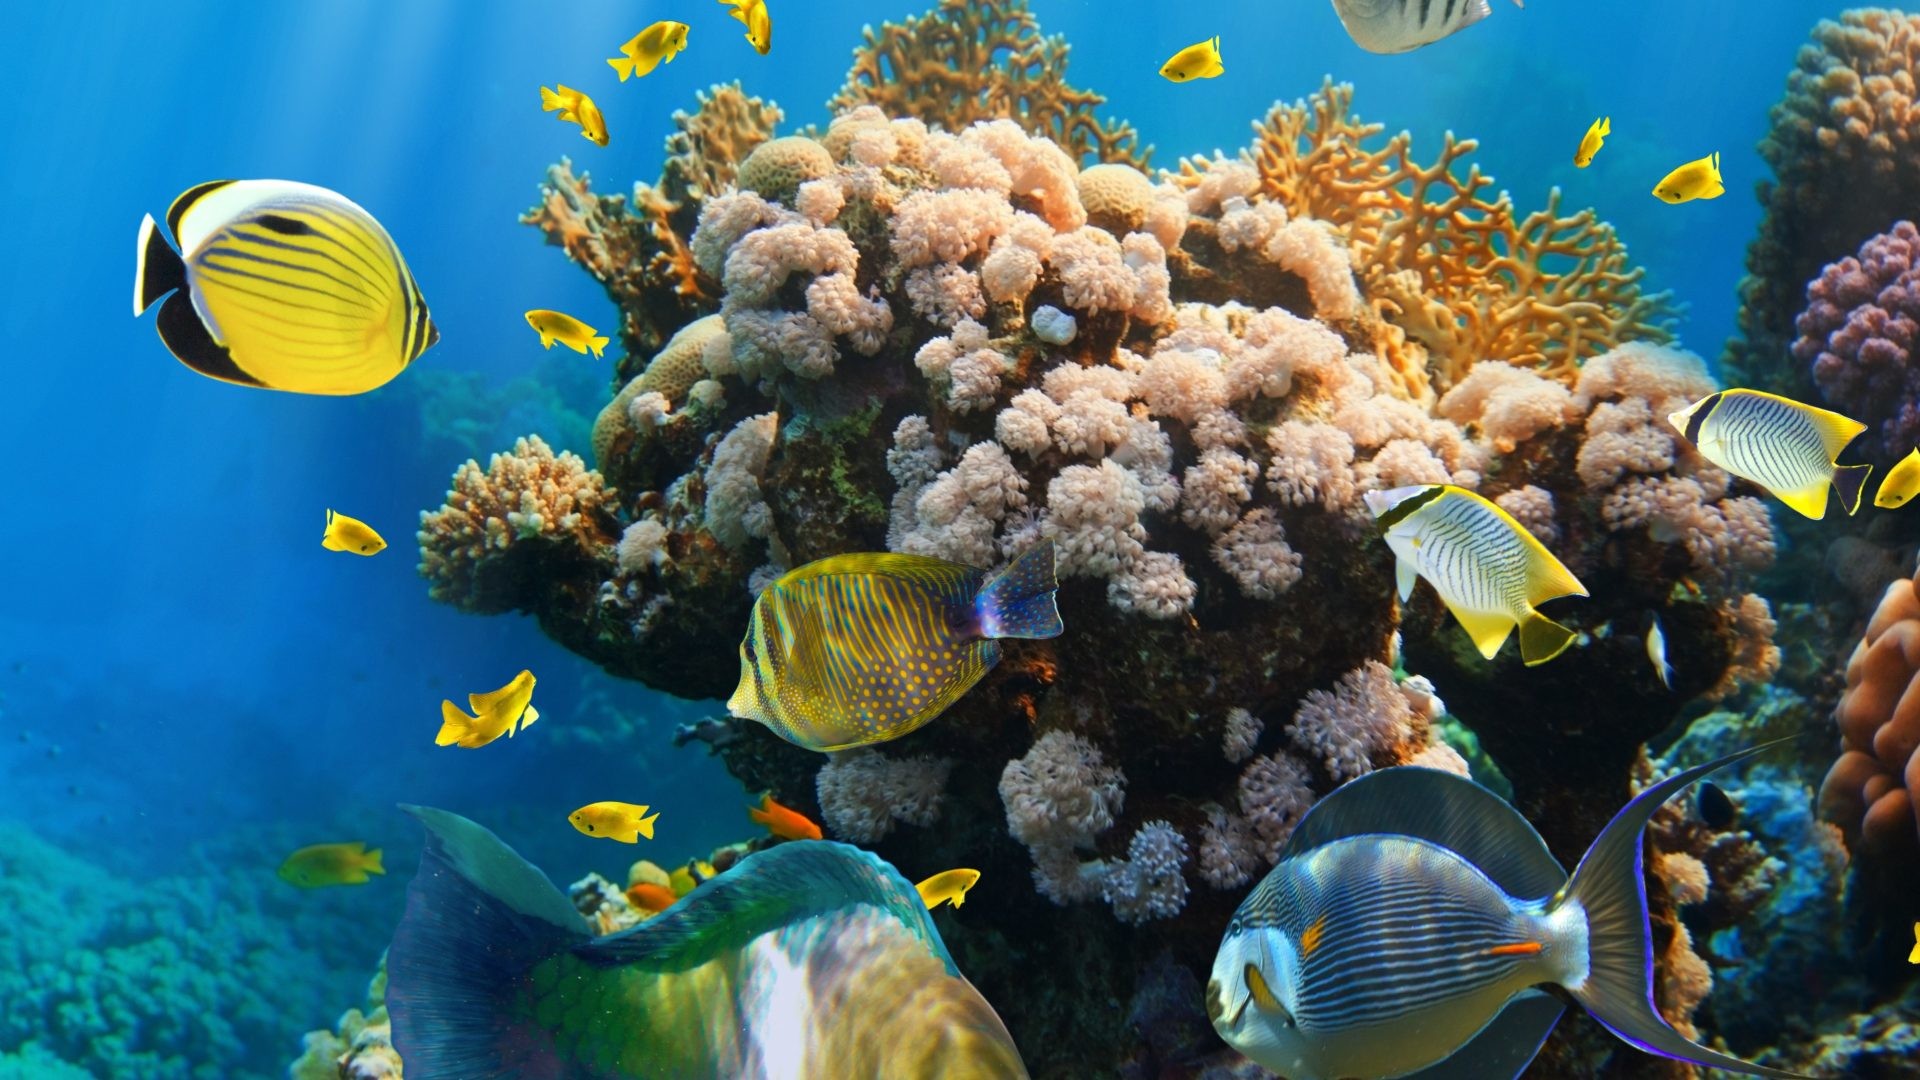 coral reef wallpaper hd,reef,coral reef,underwater,coral reef fish,coral